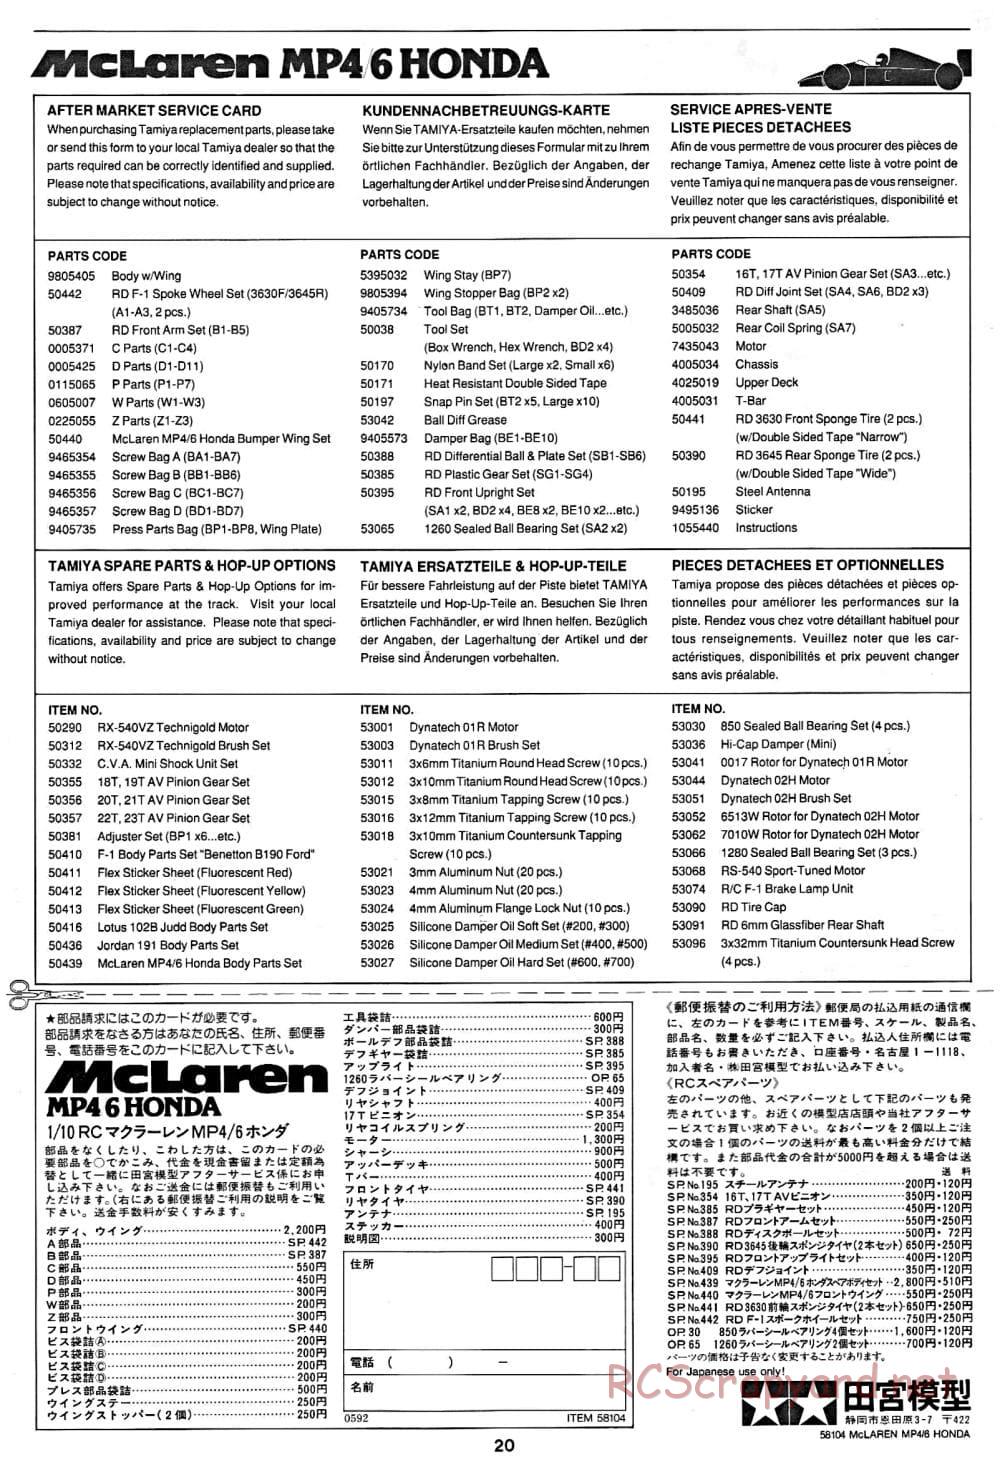 Tamiya - McLaren MP4/6 Honda - F102 Chassis - Manual - Page 20